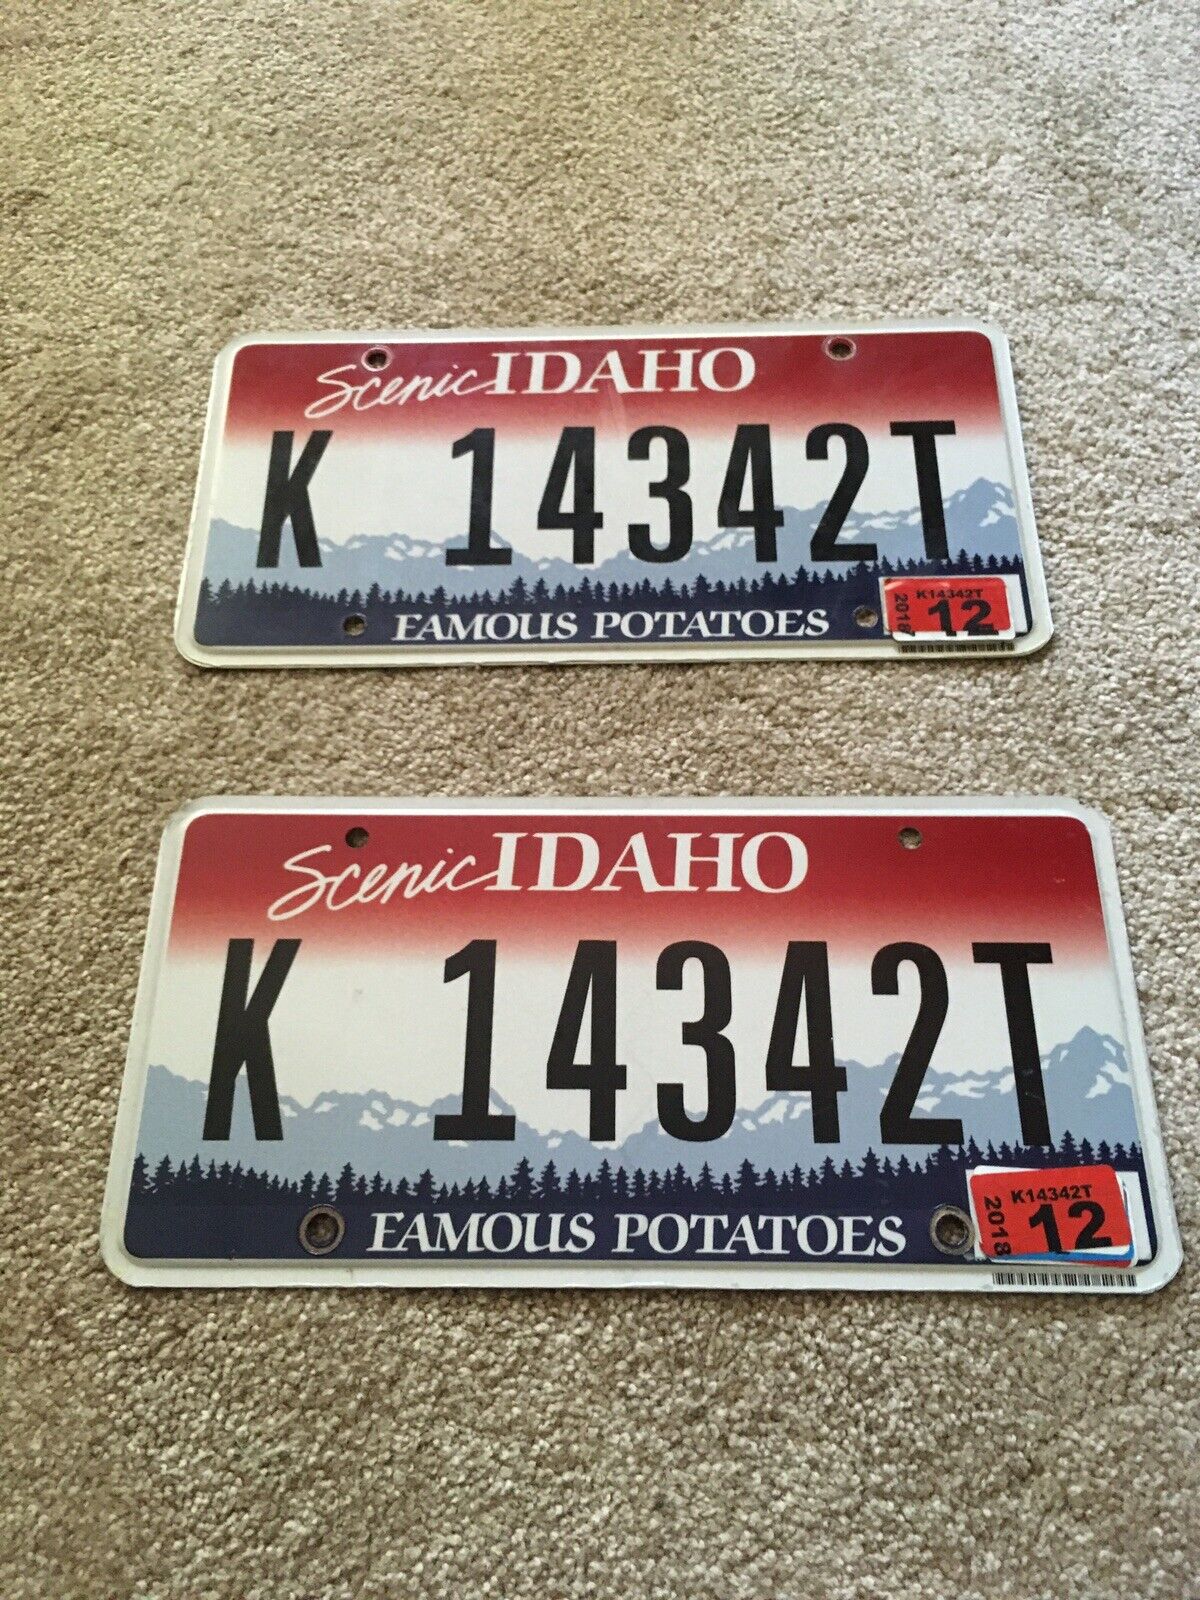 Idaho Car License Plates Expired 2018